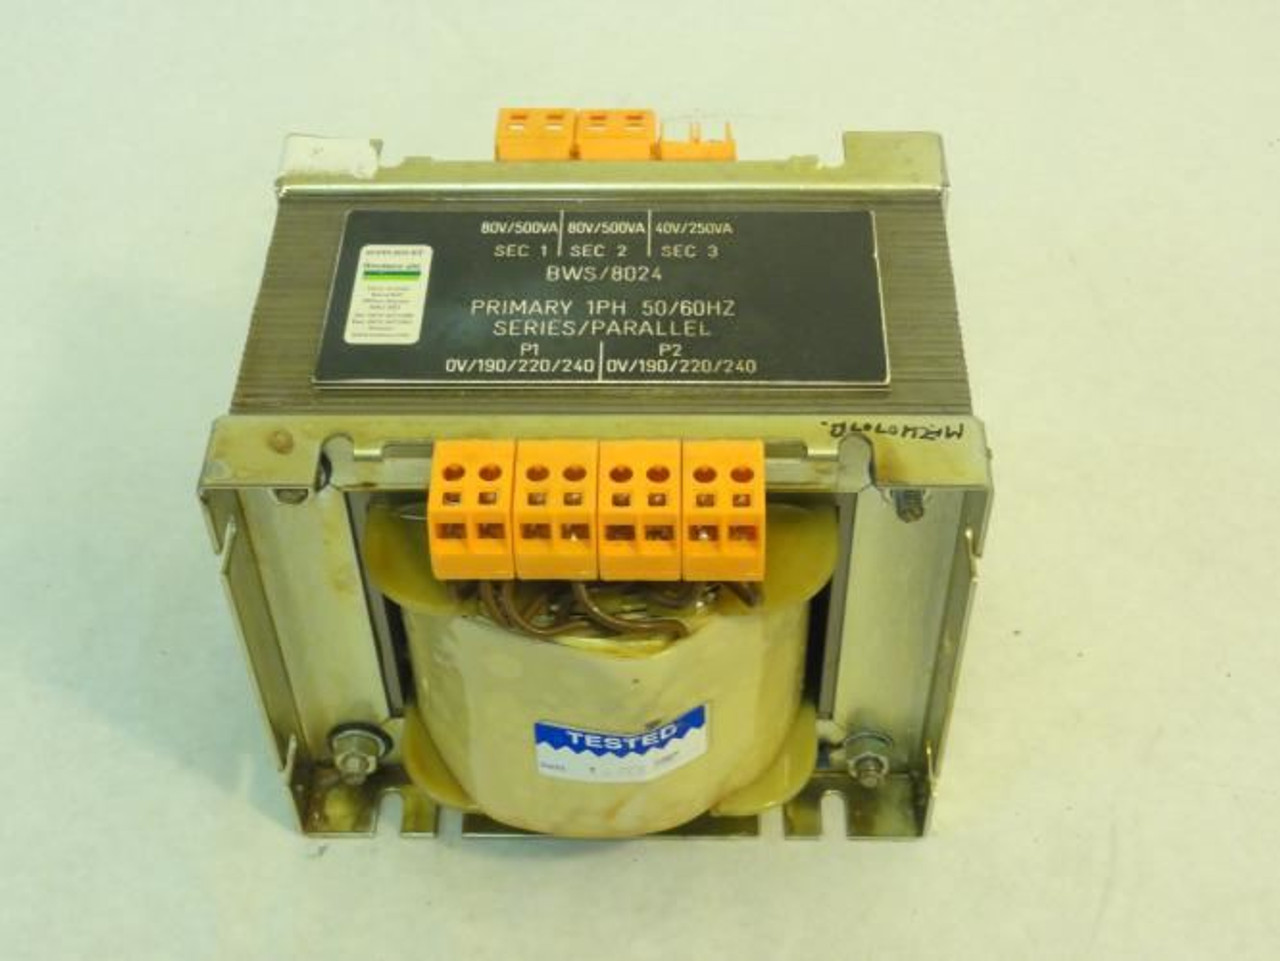 Routeco BWS/8024; Transformer (One Plastic Cover Broke Off)